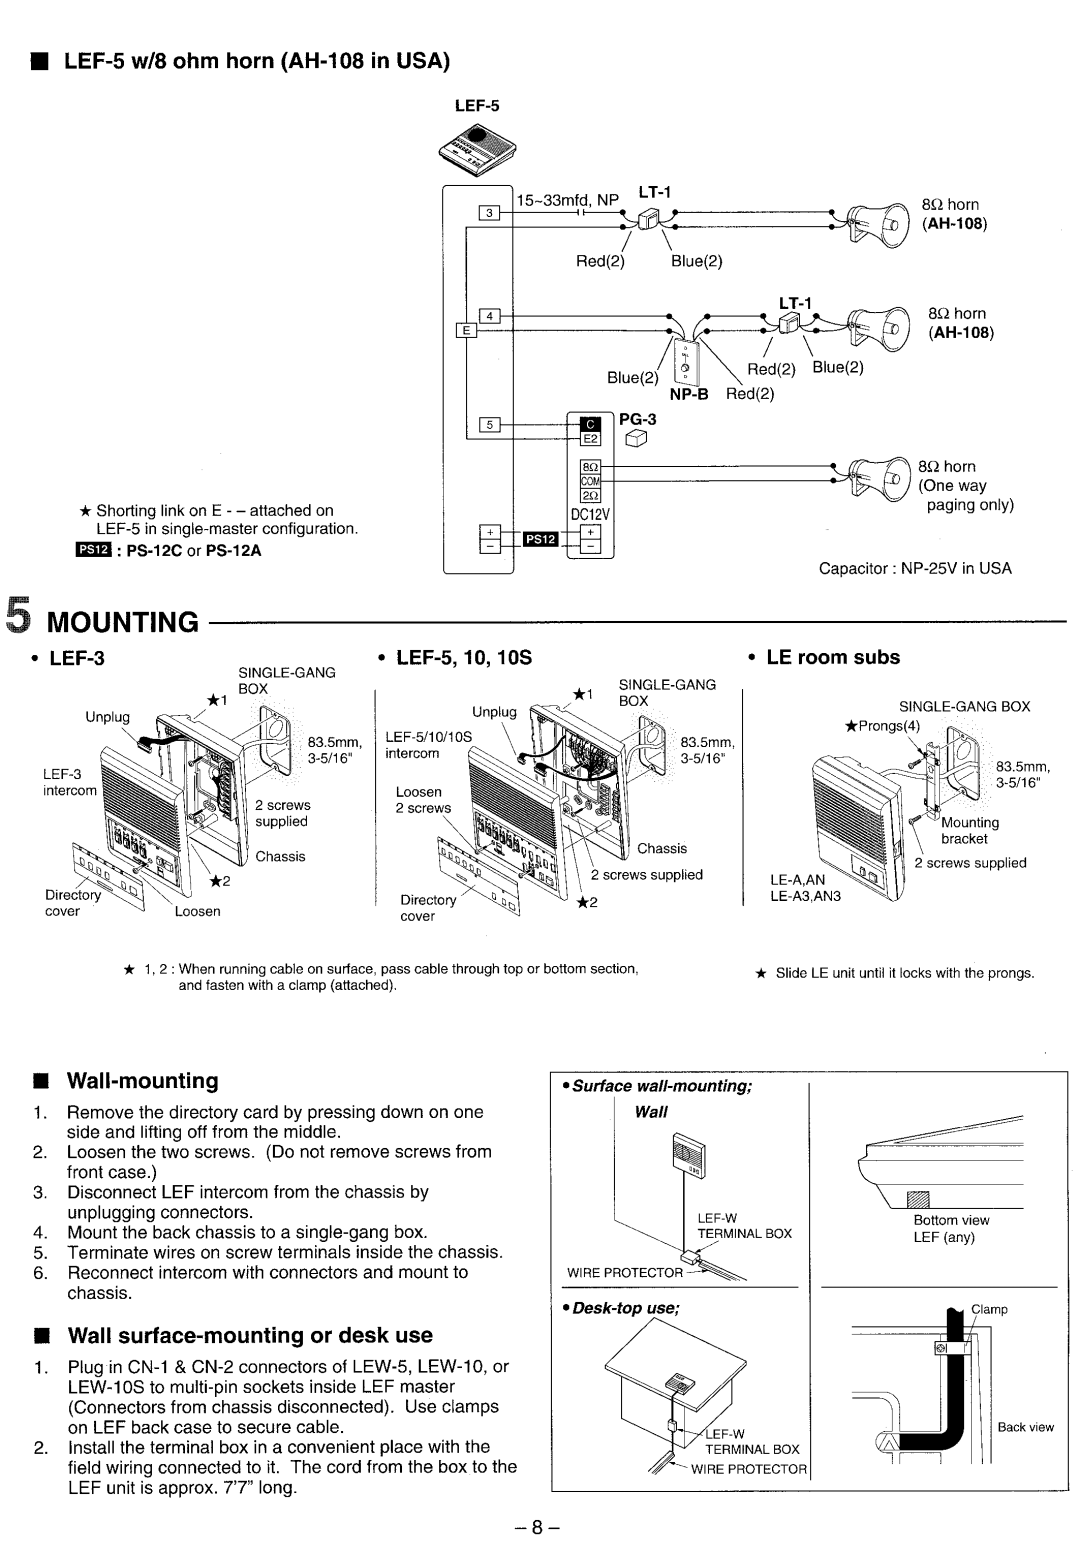 Aiphone LEF-3, LEF-5, LEF-10S manual 